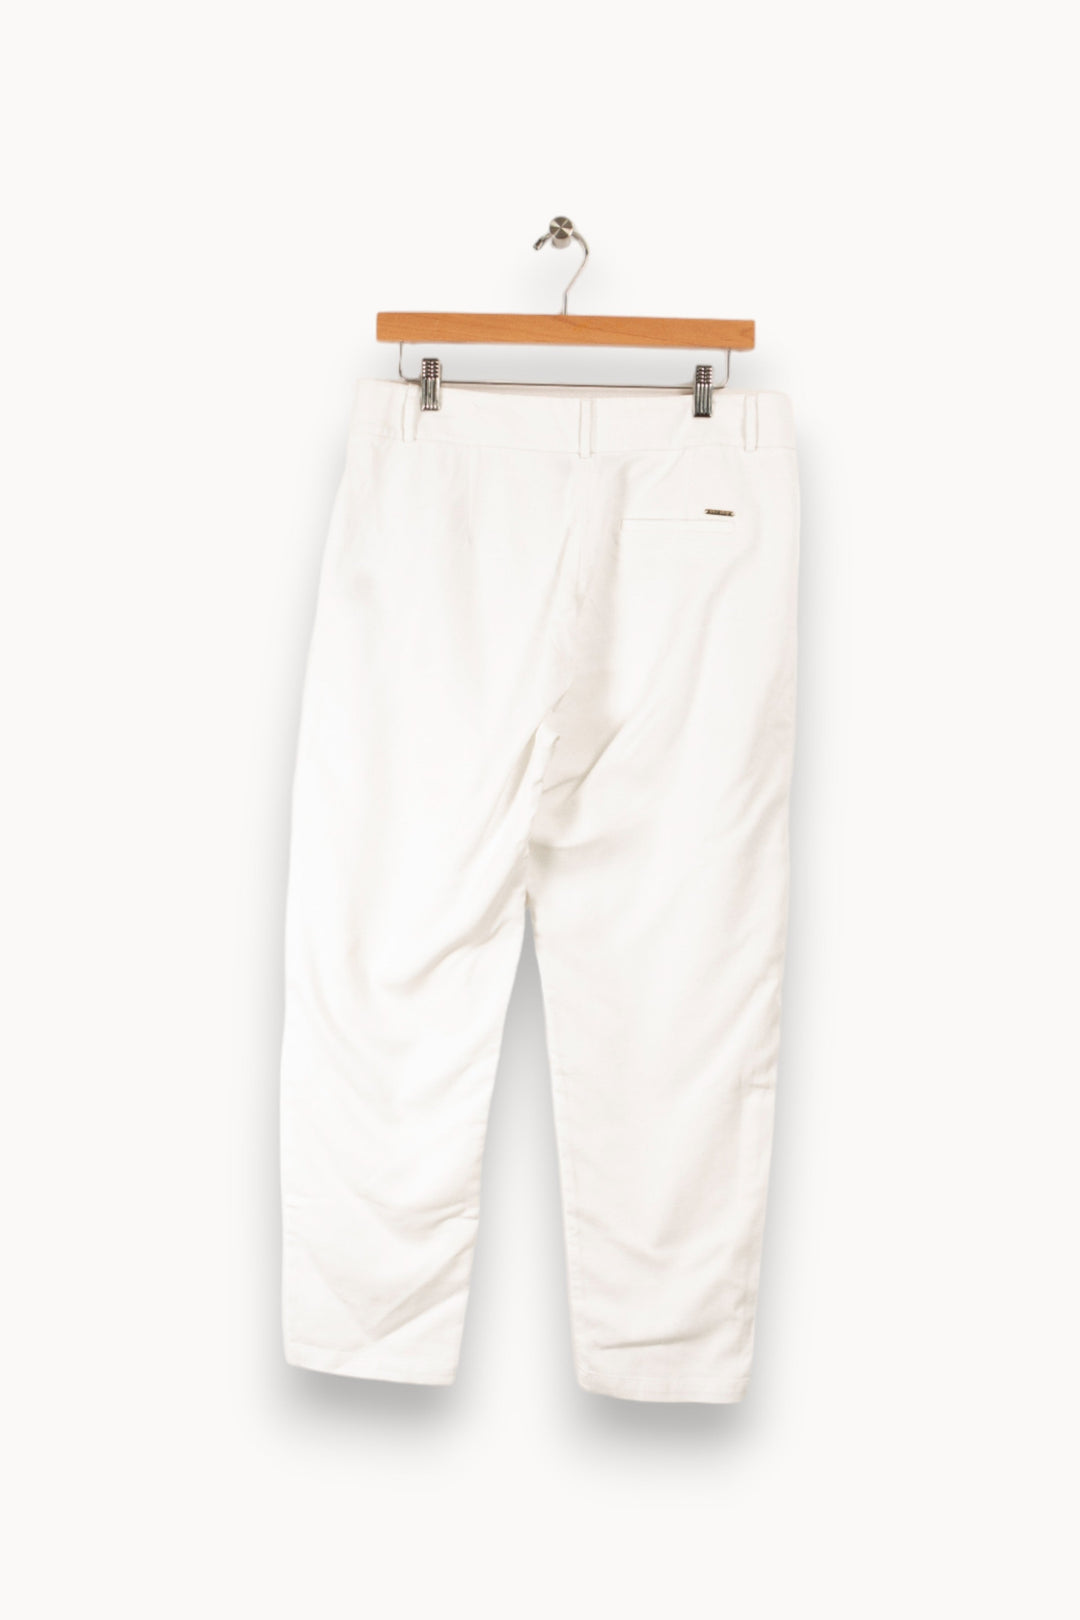 Pantalon blanc - Taille M/38